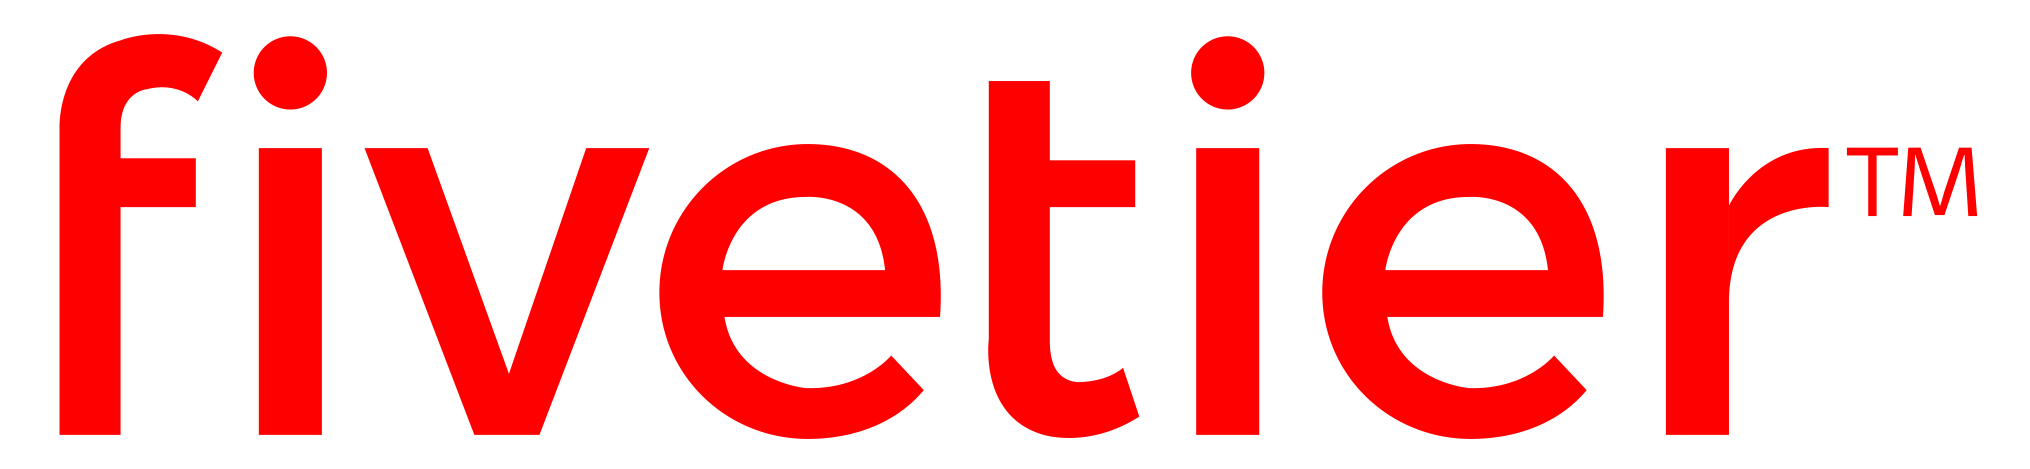 Fivetier logo red